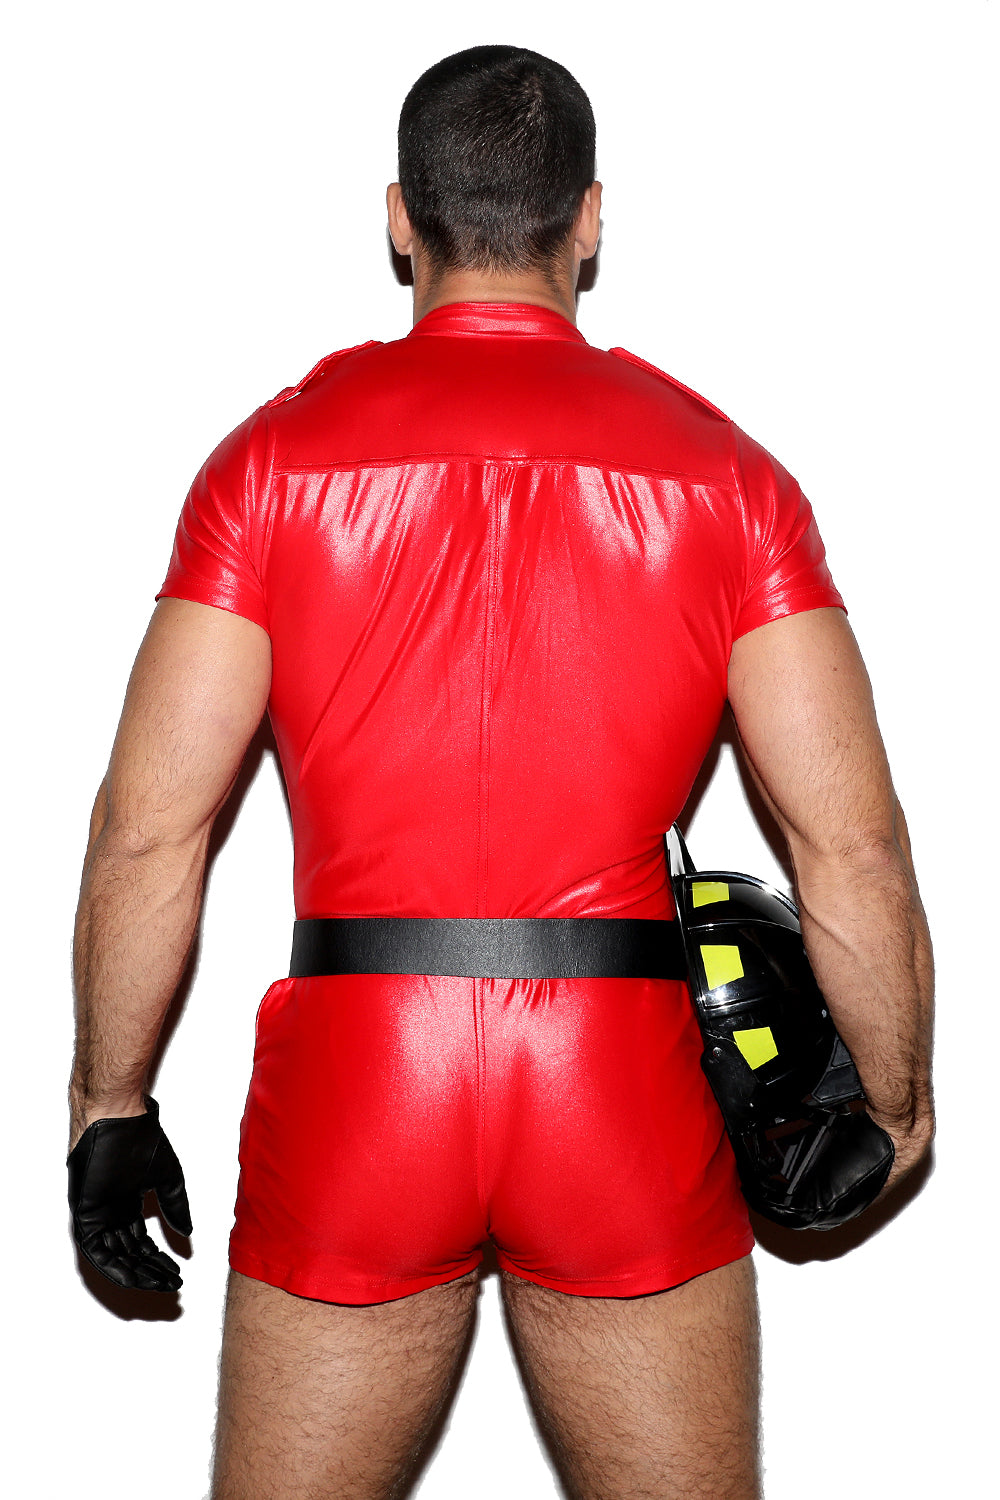 Fireman Suit (Multi-Theme Suit)